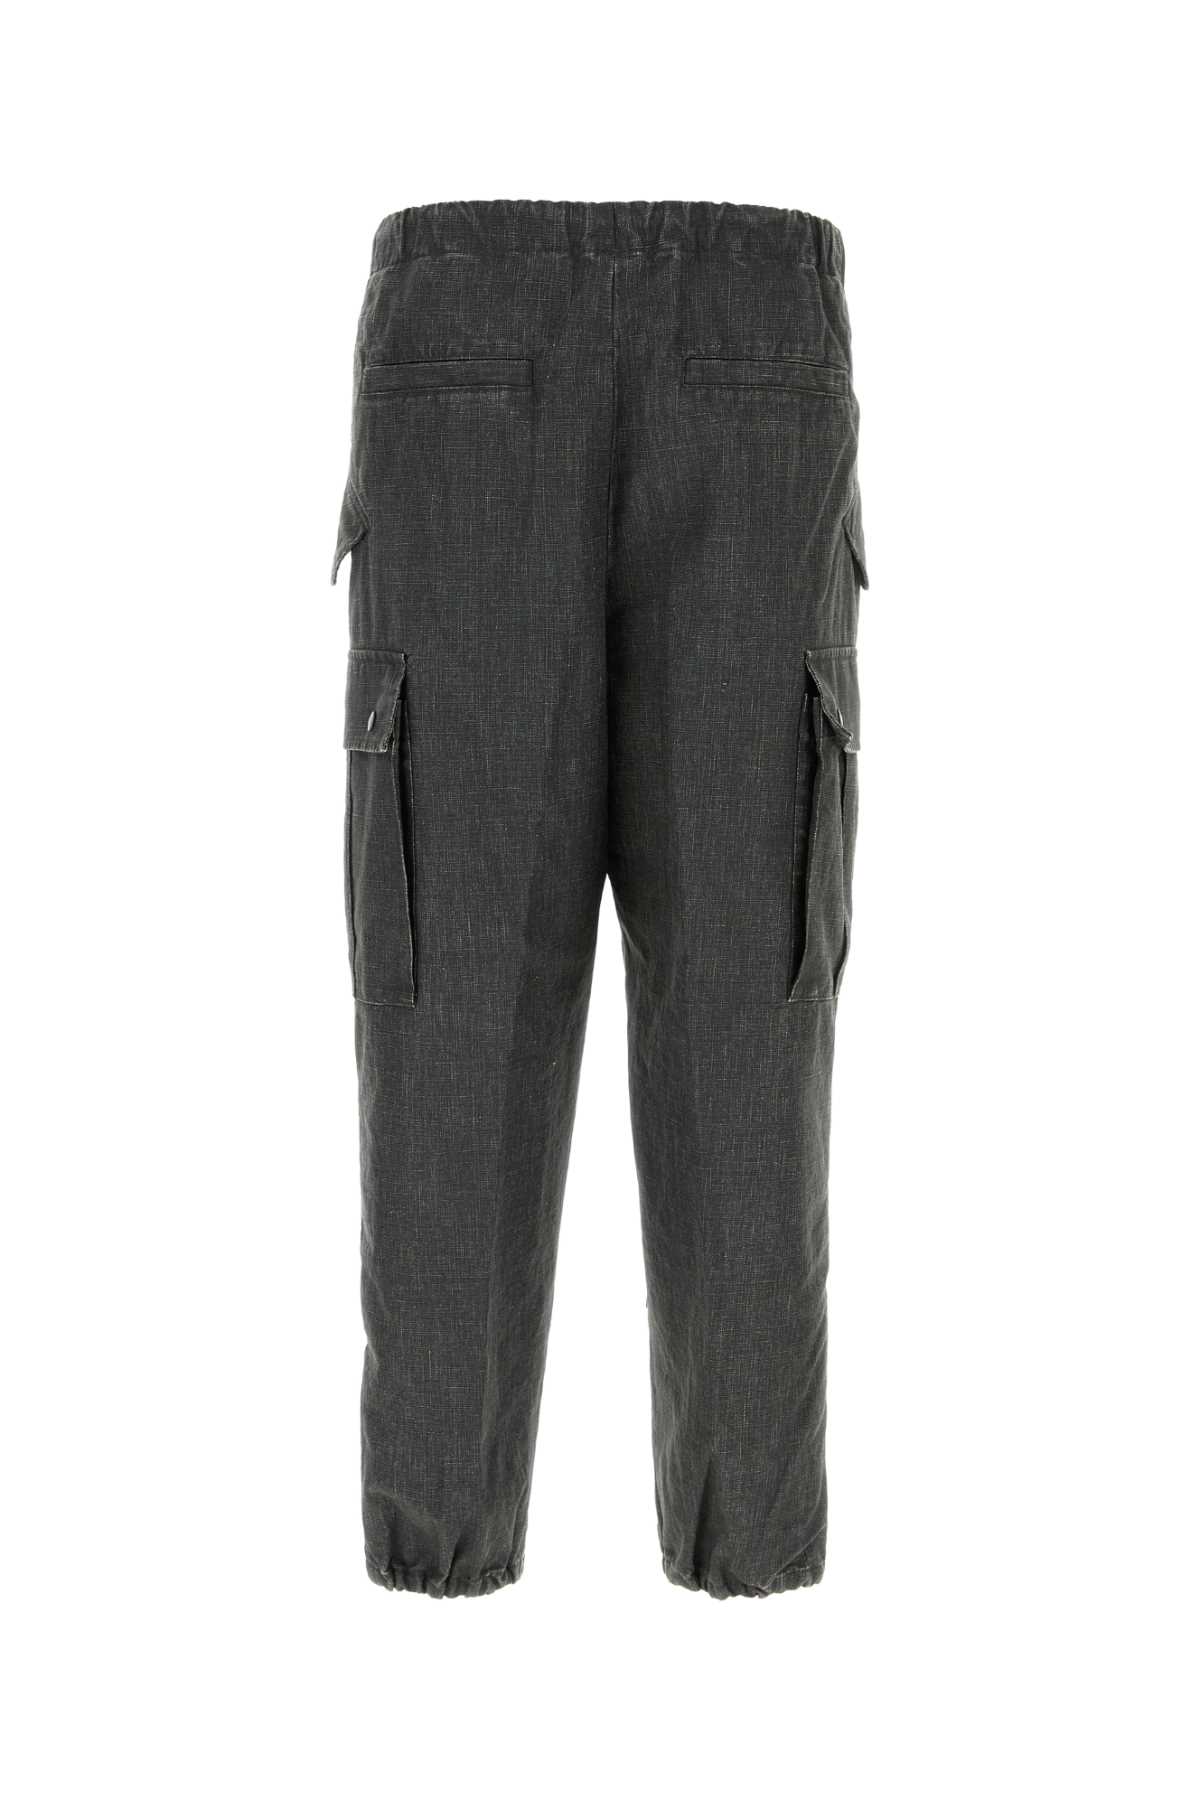 Dries Van Noten Pants In Gray | ModeSens